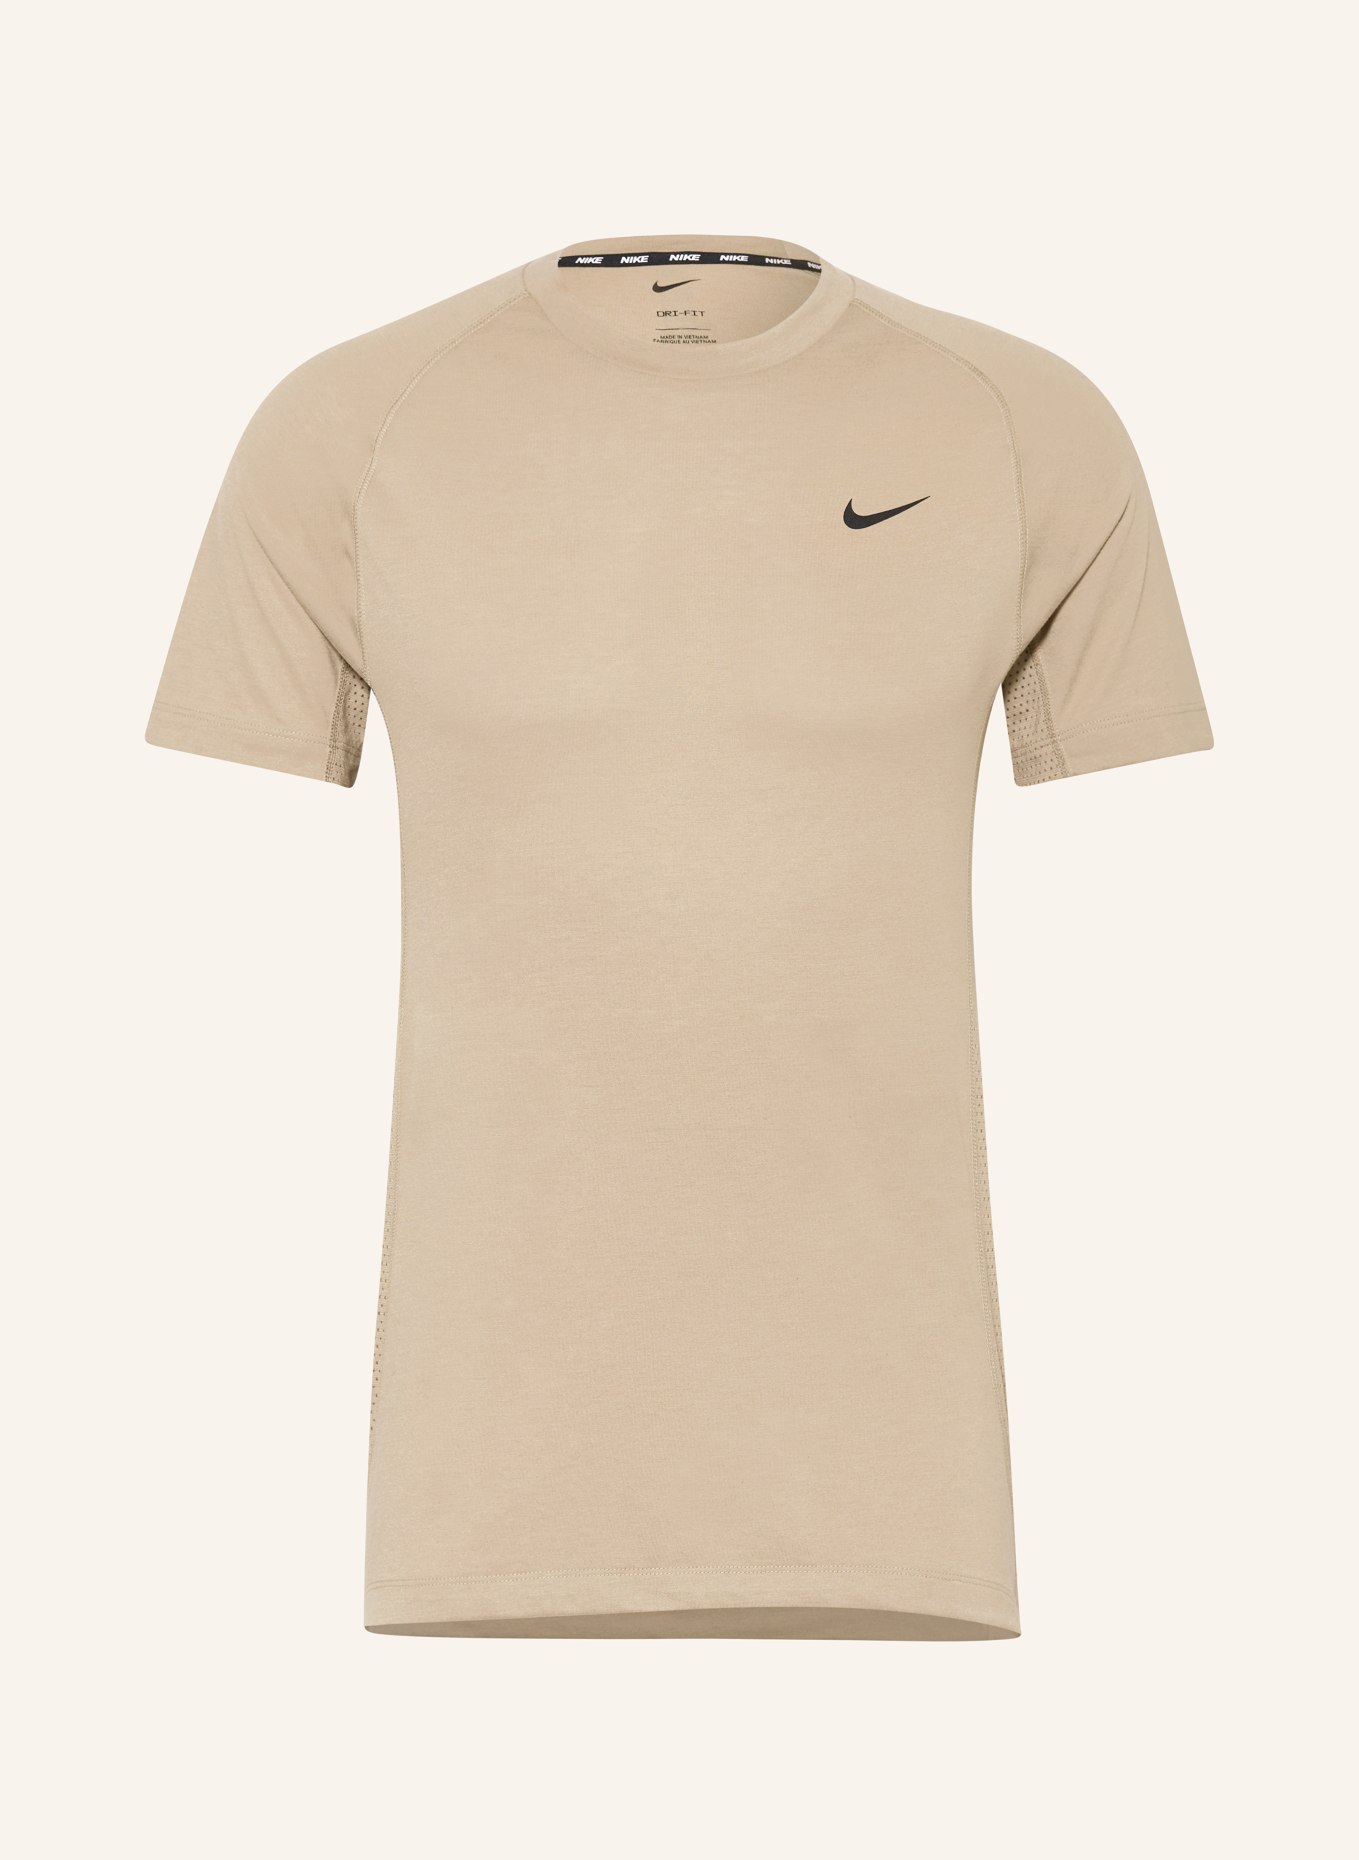 Nike T-Shirt FLEX REP DRI-FIT, Farbe: KHAKI (Bild 1)